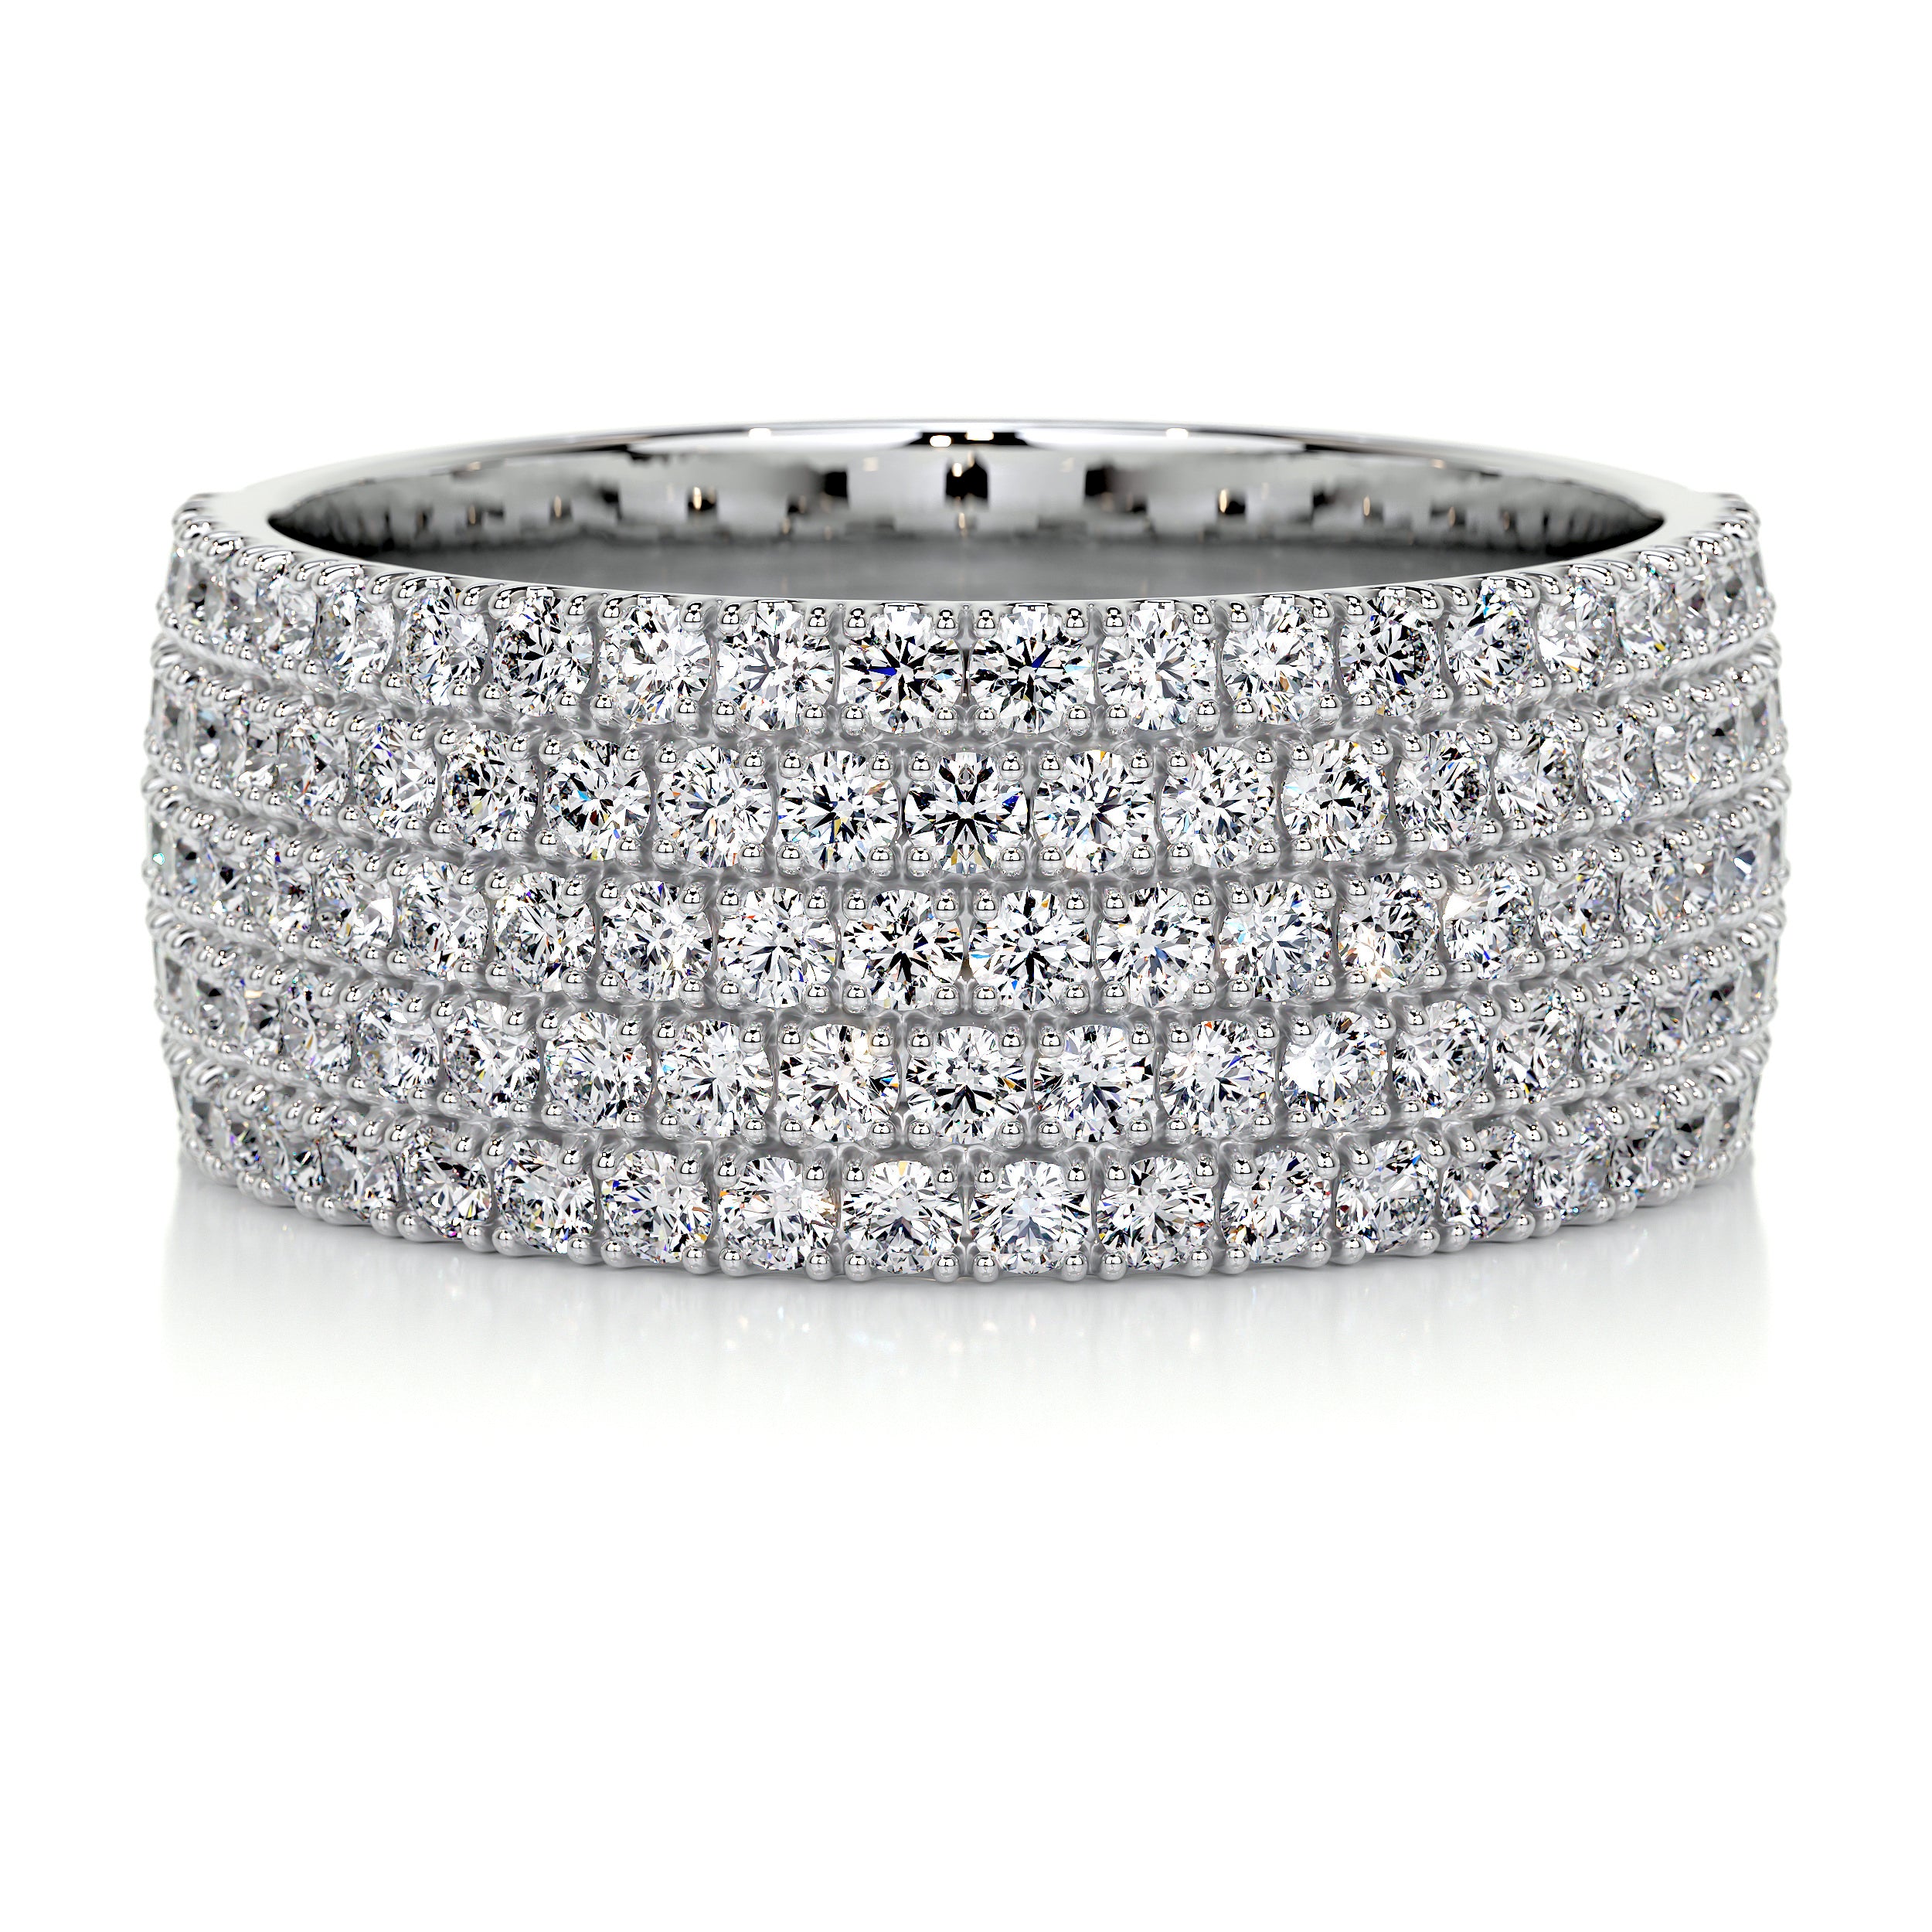 Dakota Diamond Wedding Ring   (1.2 Carat) -14K White Gold